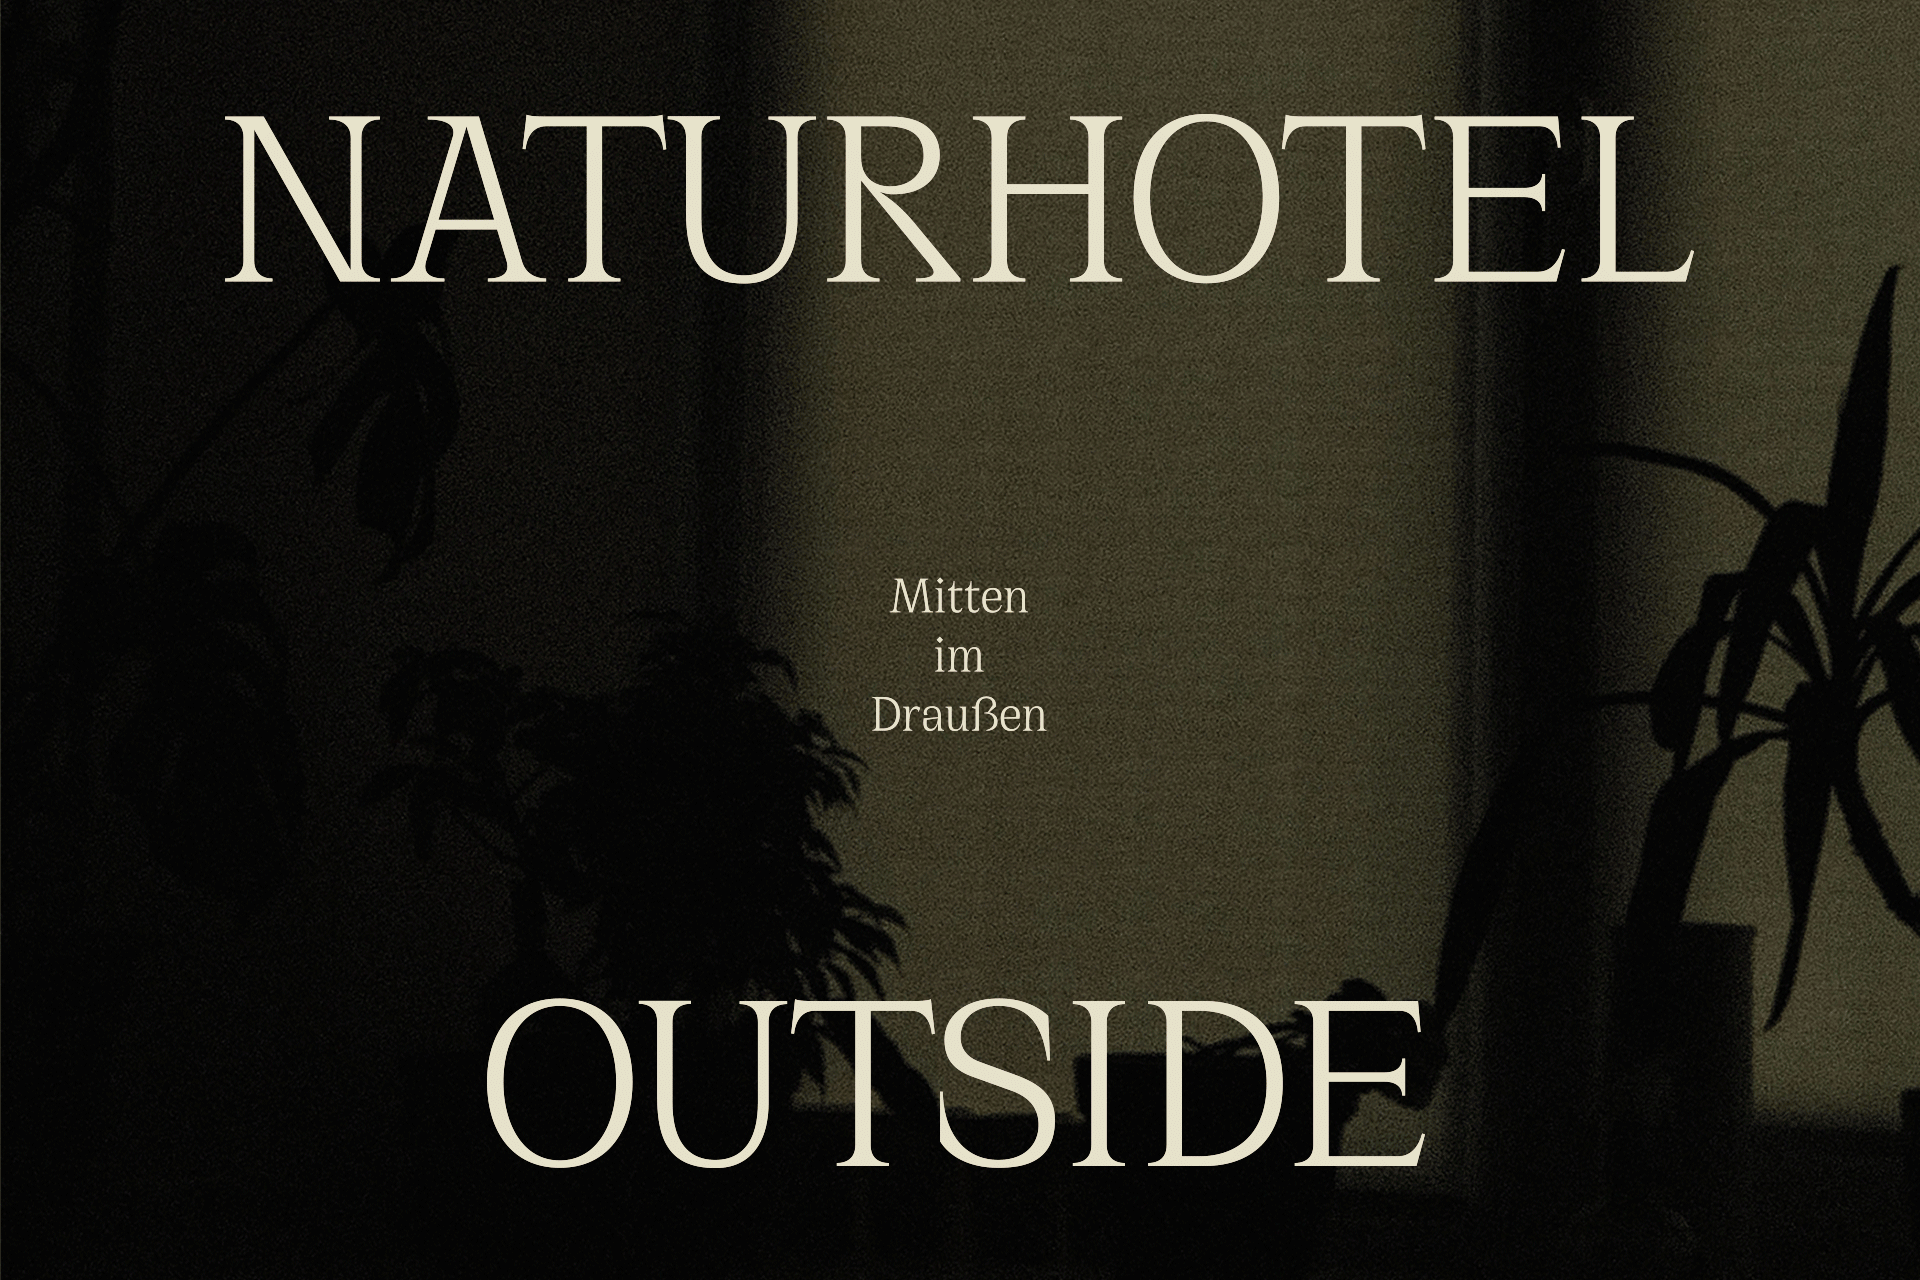 Naturhotel Outside – Mitten im Draußen